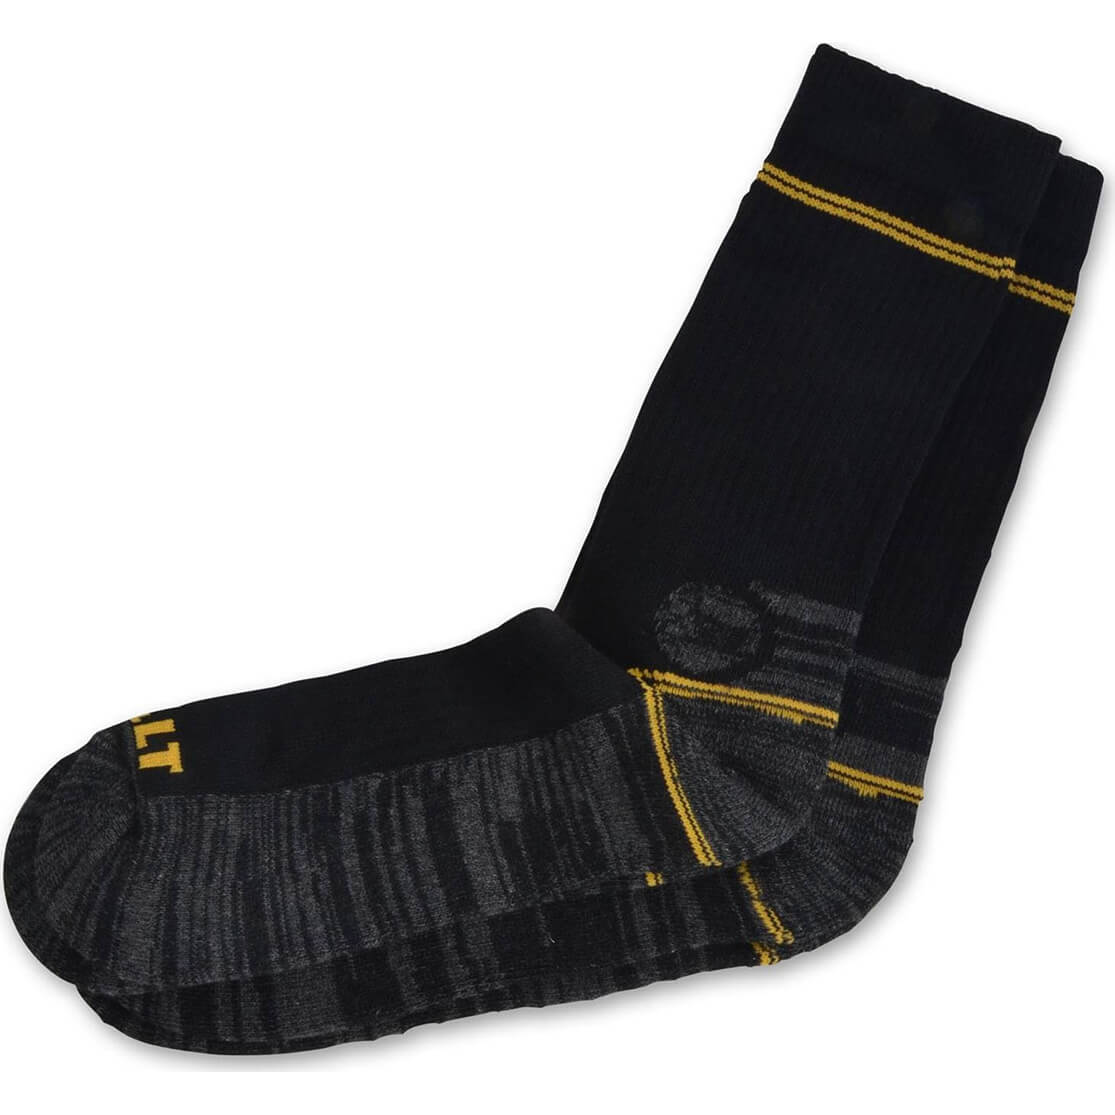 Image of DeWalt 2 Pairs Hydro Twin Pair Pack of Work Socks Black One Size